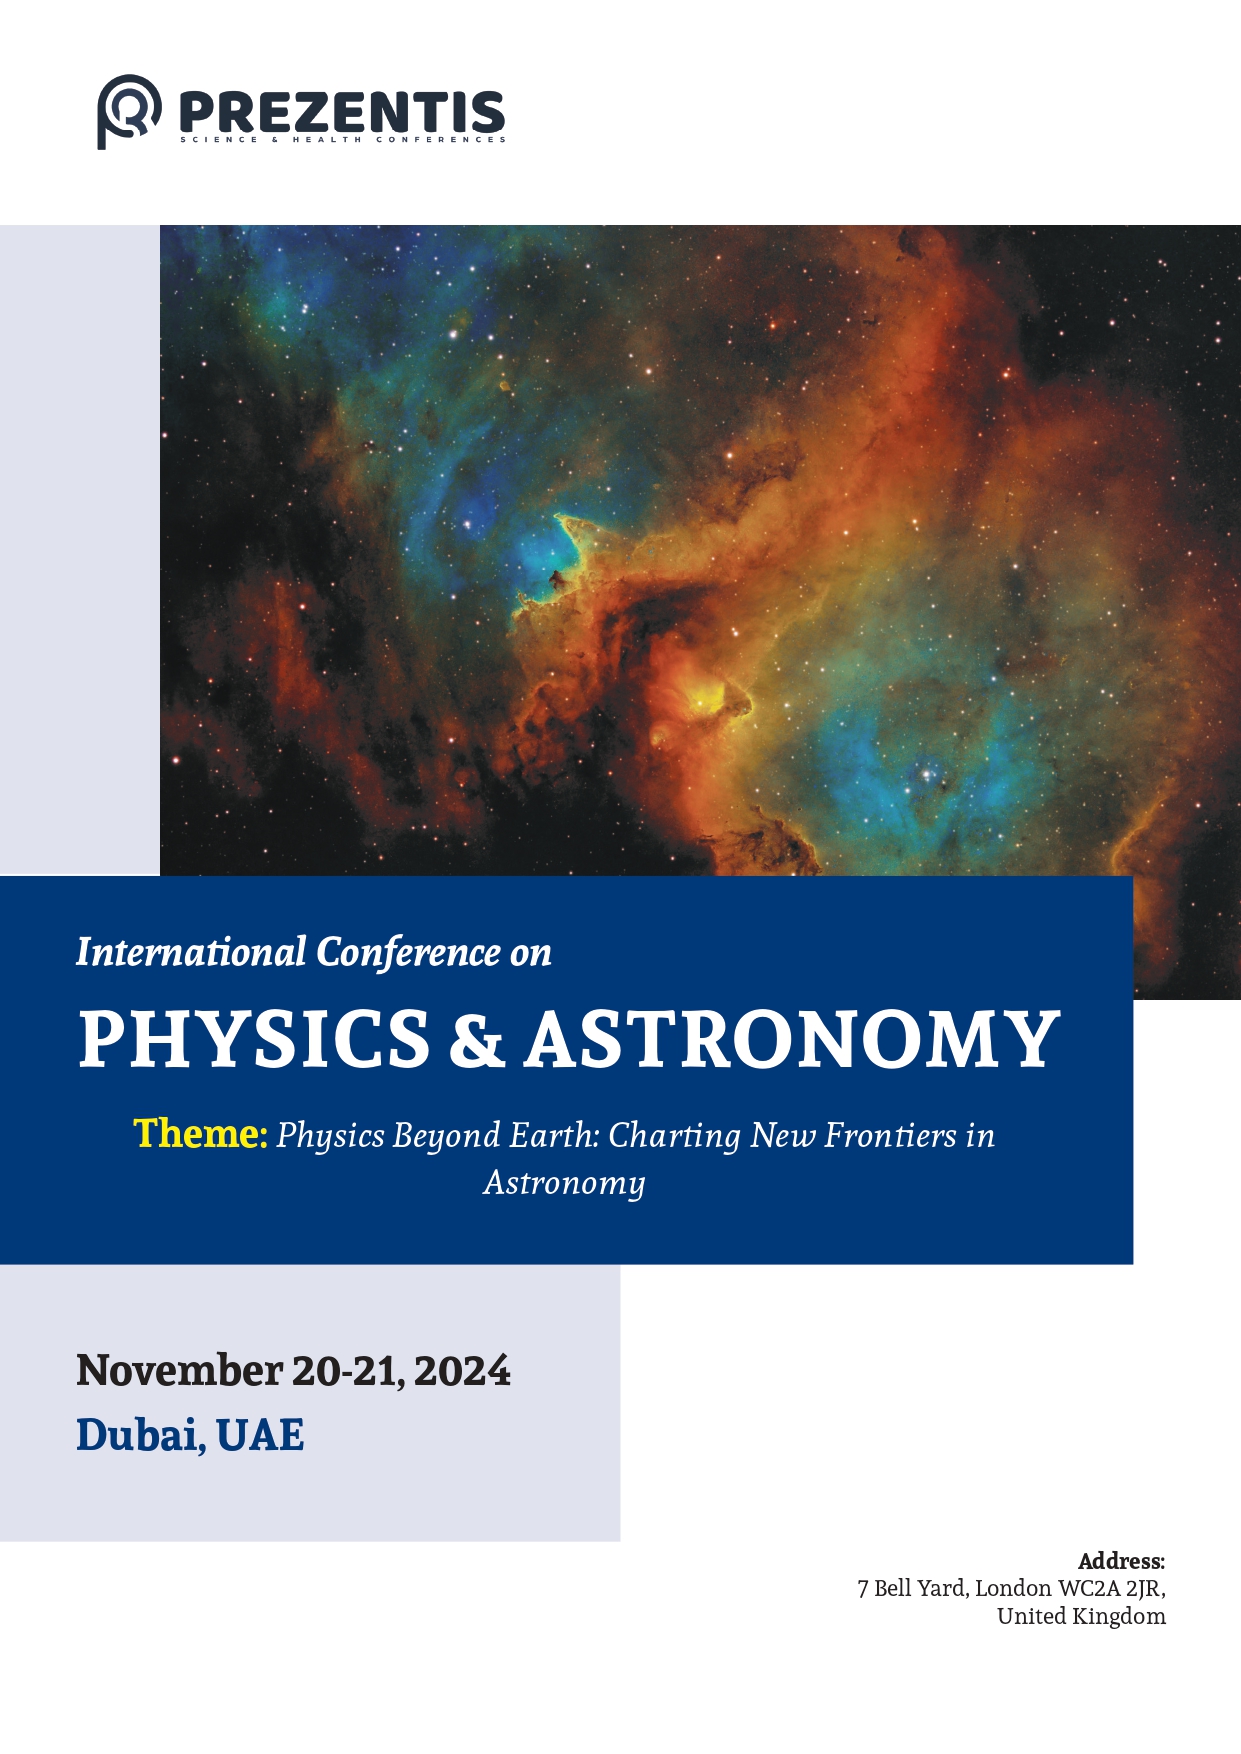 Physics & Astronomy, Dubai, United Arab Emirates